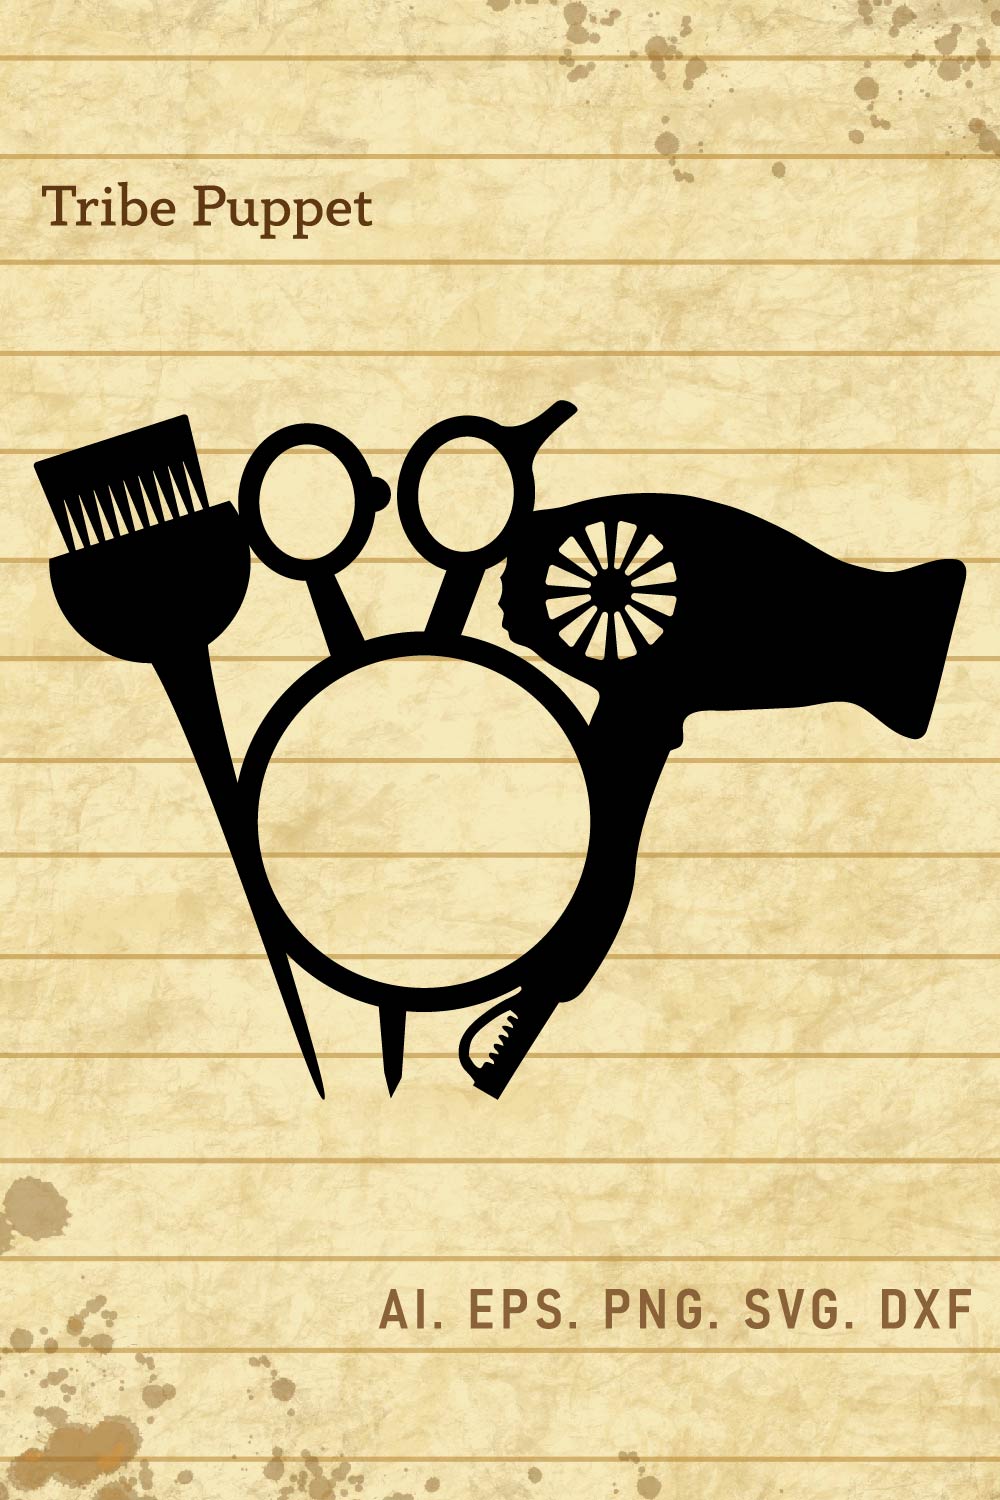 Barber Hairdresser Design pinterest preview image.